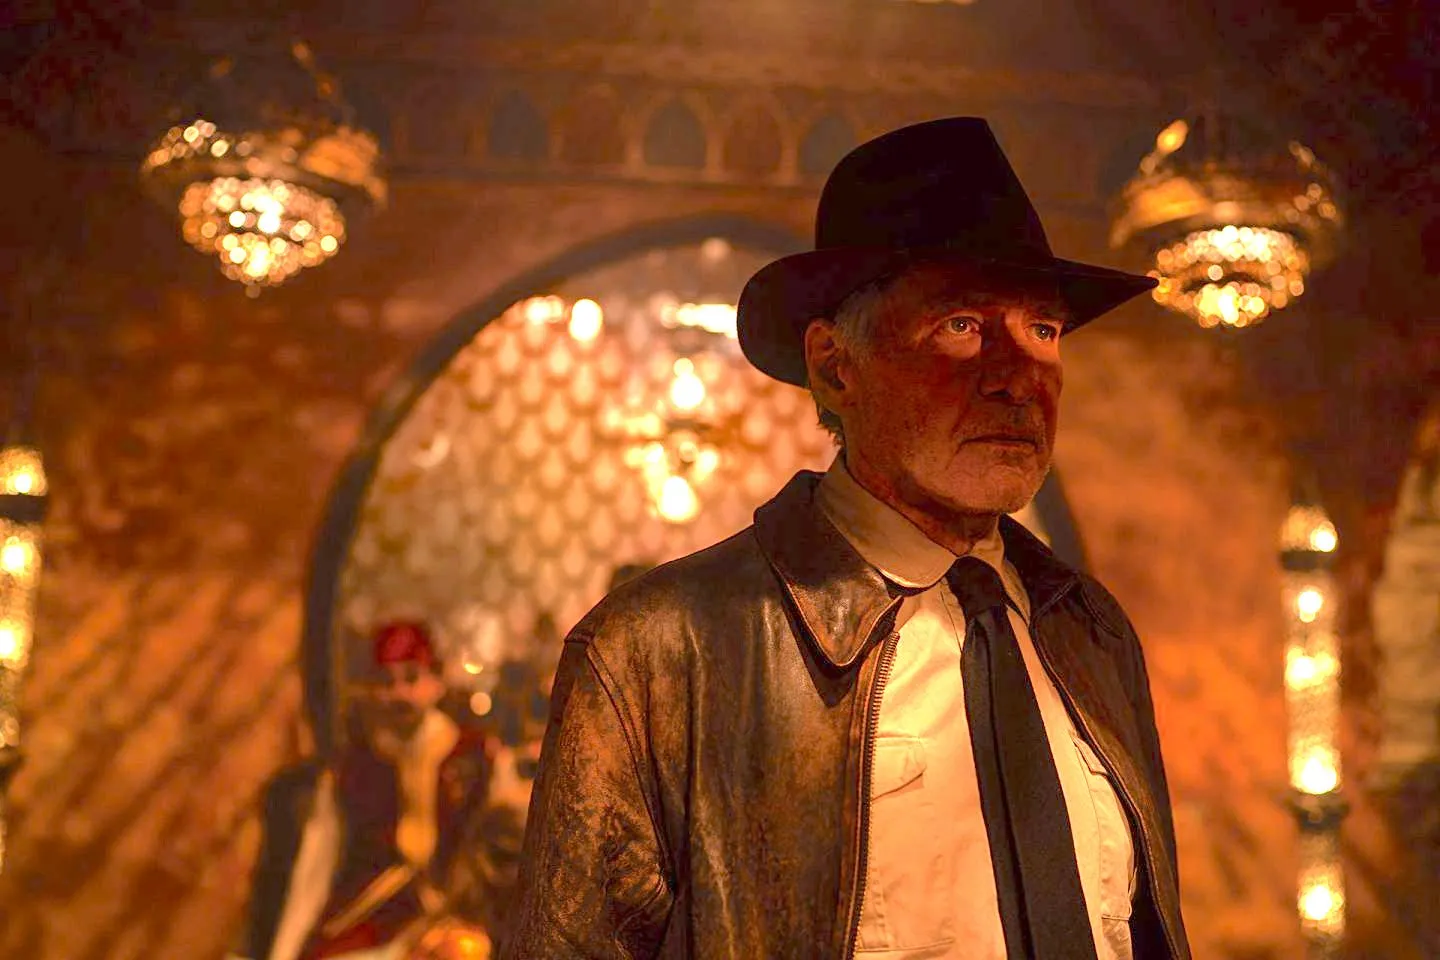 Revelan el tráiler de la película 'Indiana Jones y El Dial del Destino' -  Cine y Tv - Cultura 